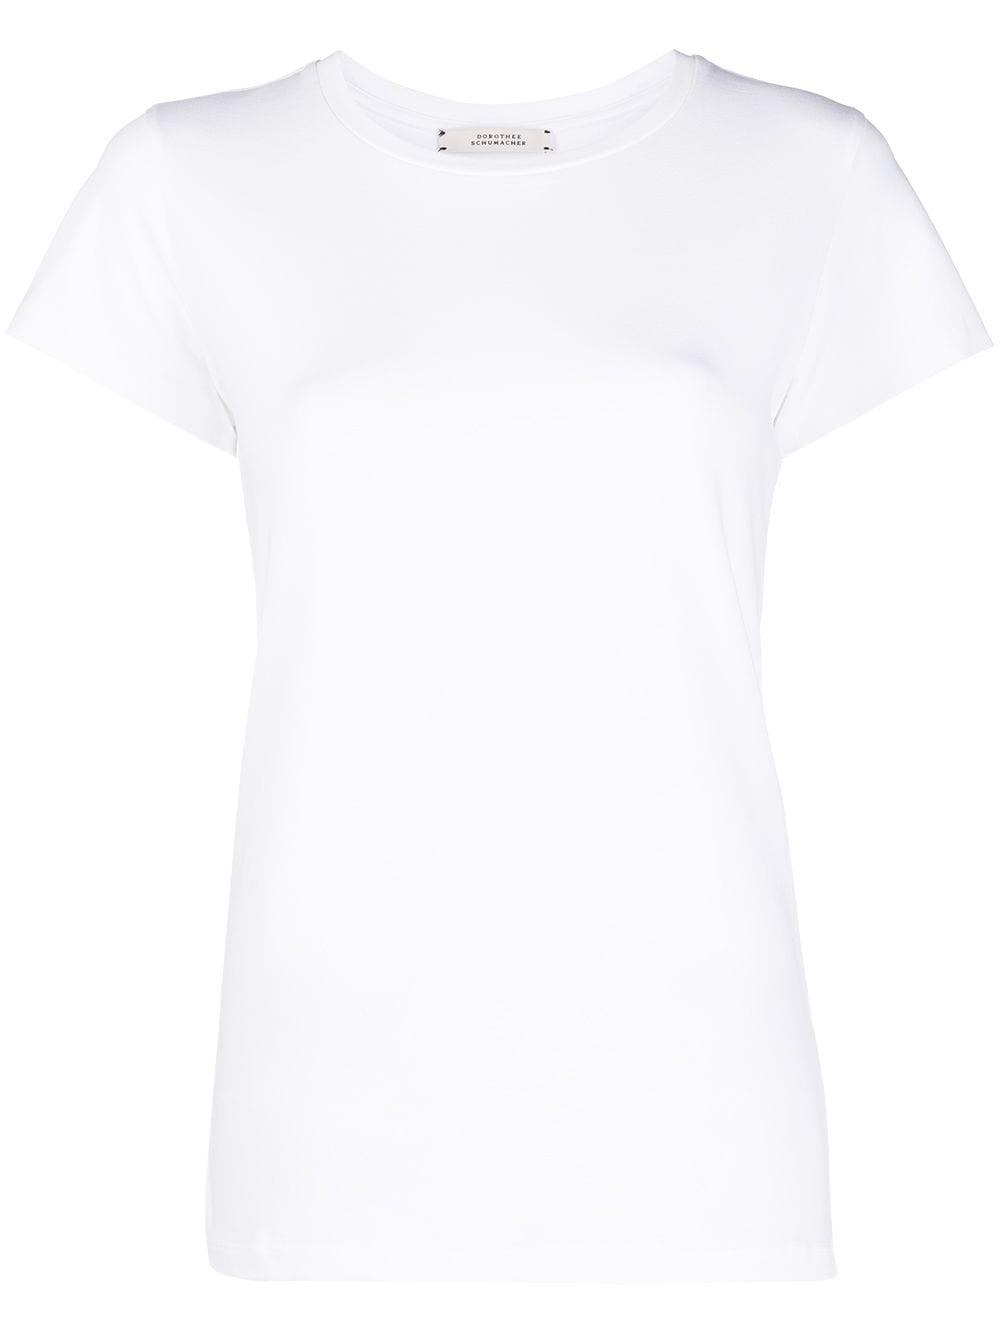 Dorothee Schumacher All Time Favourites cotton T-Shirt - White von Dorothee Schumacher